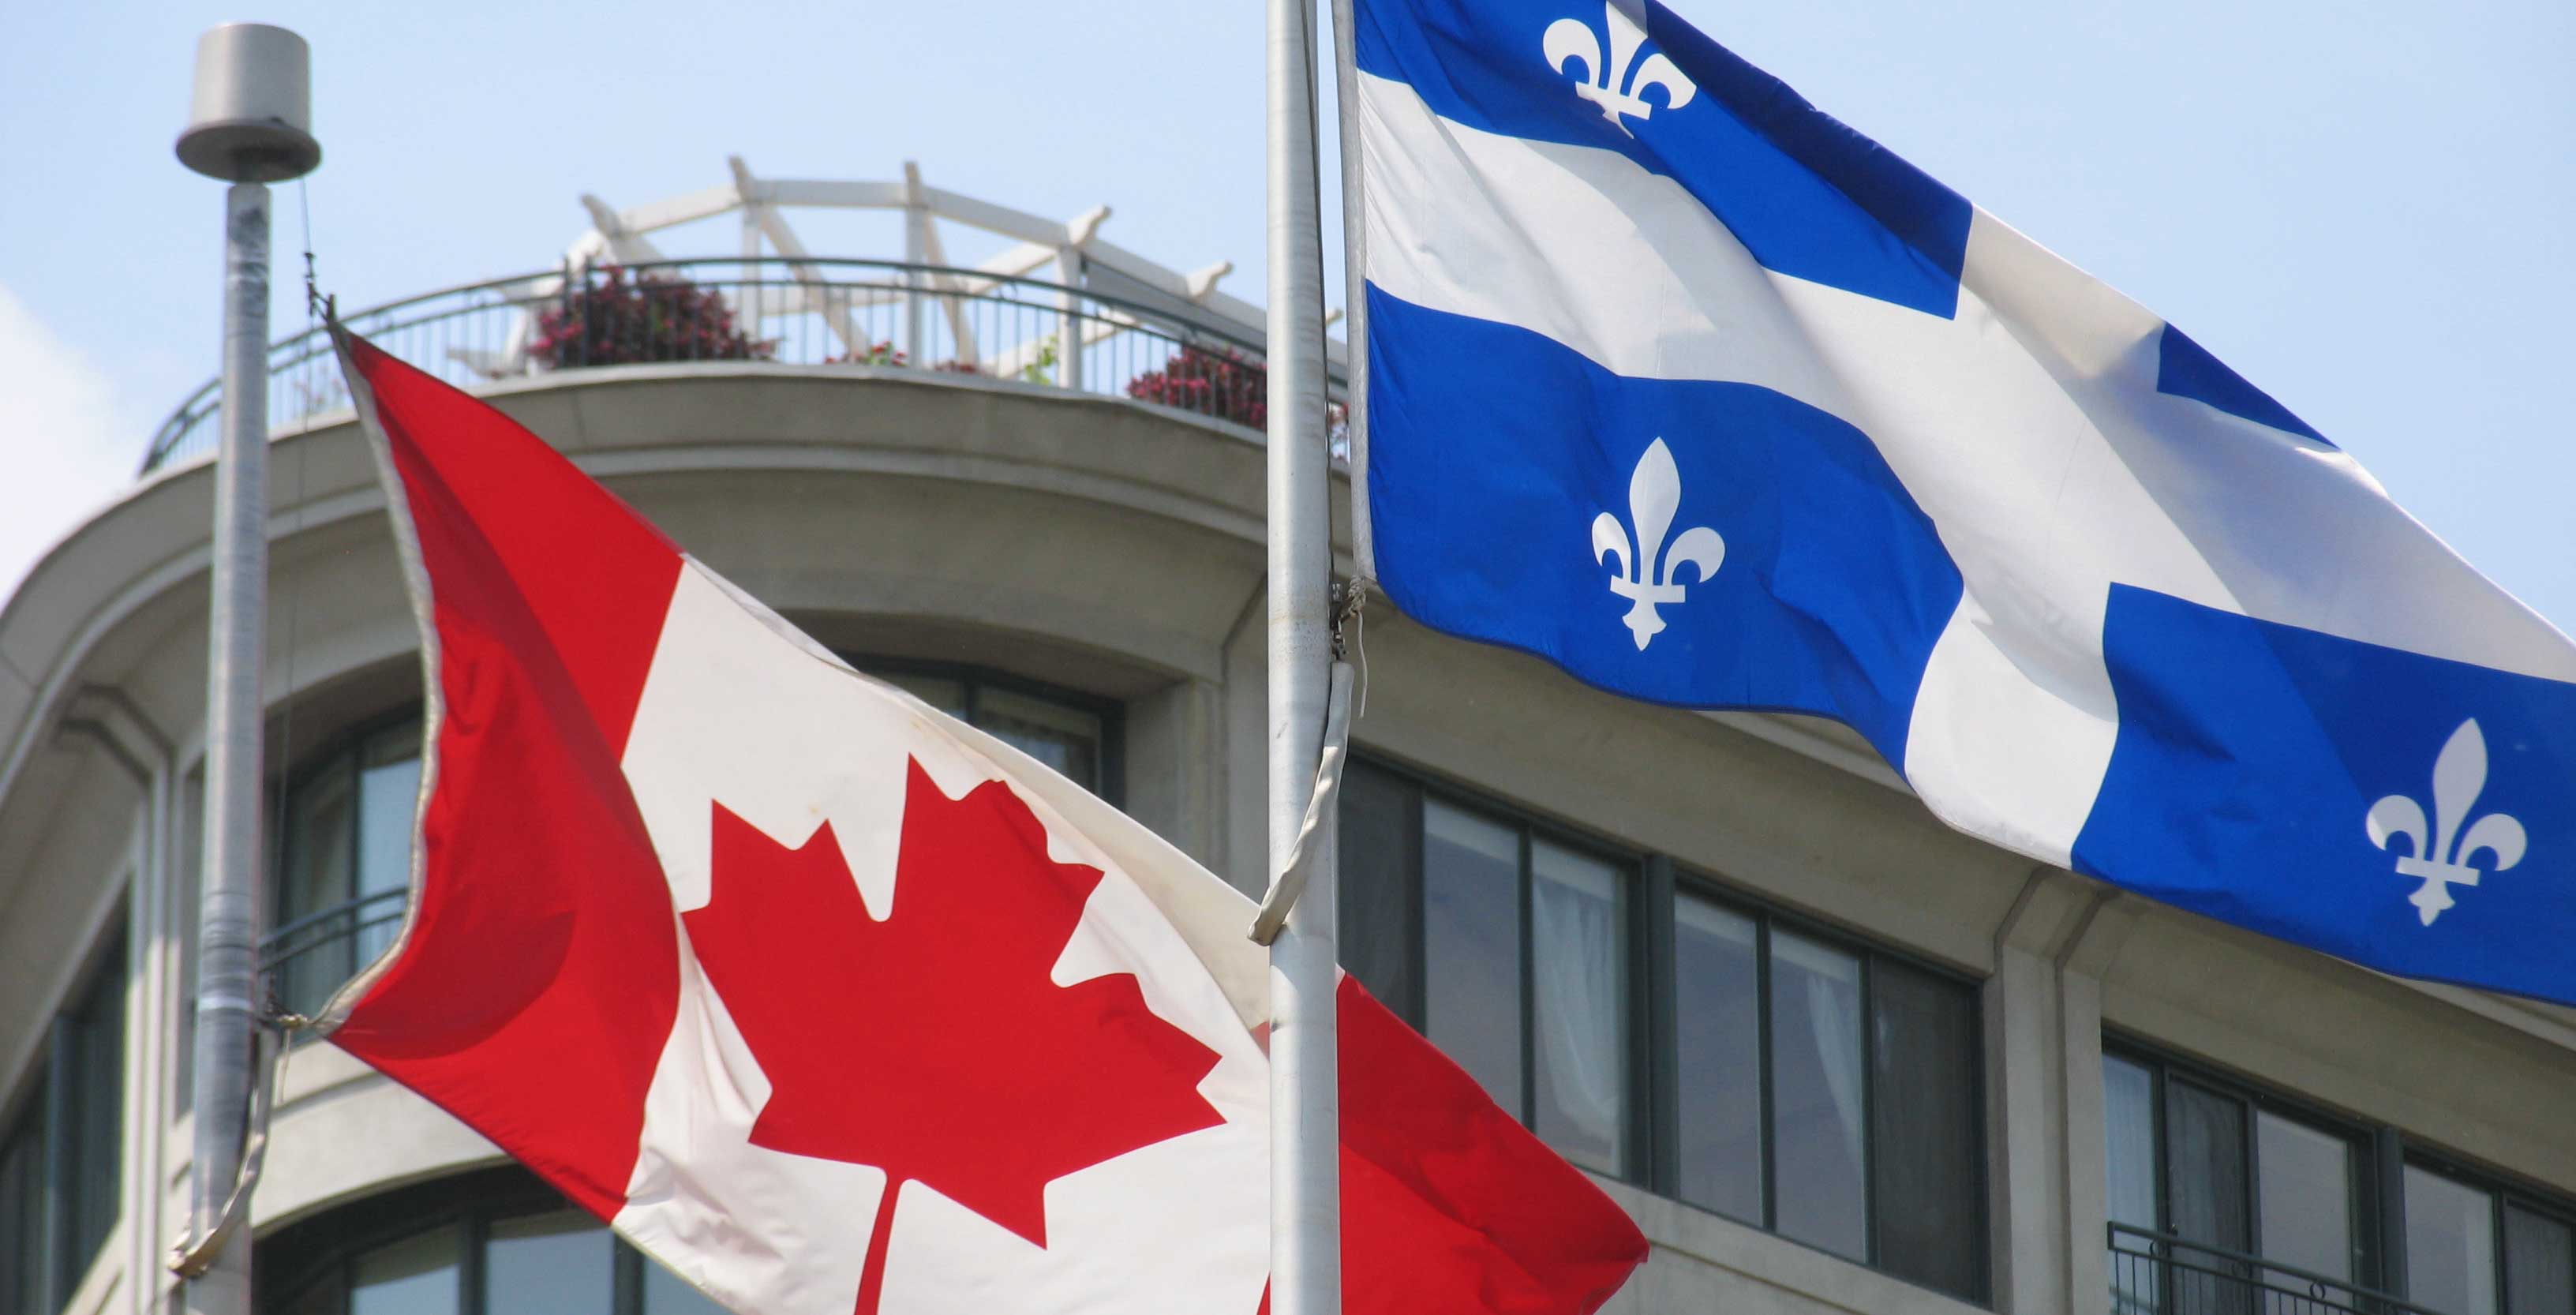 Quebec Canada flag